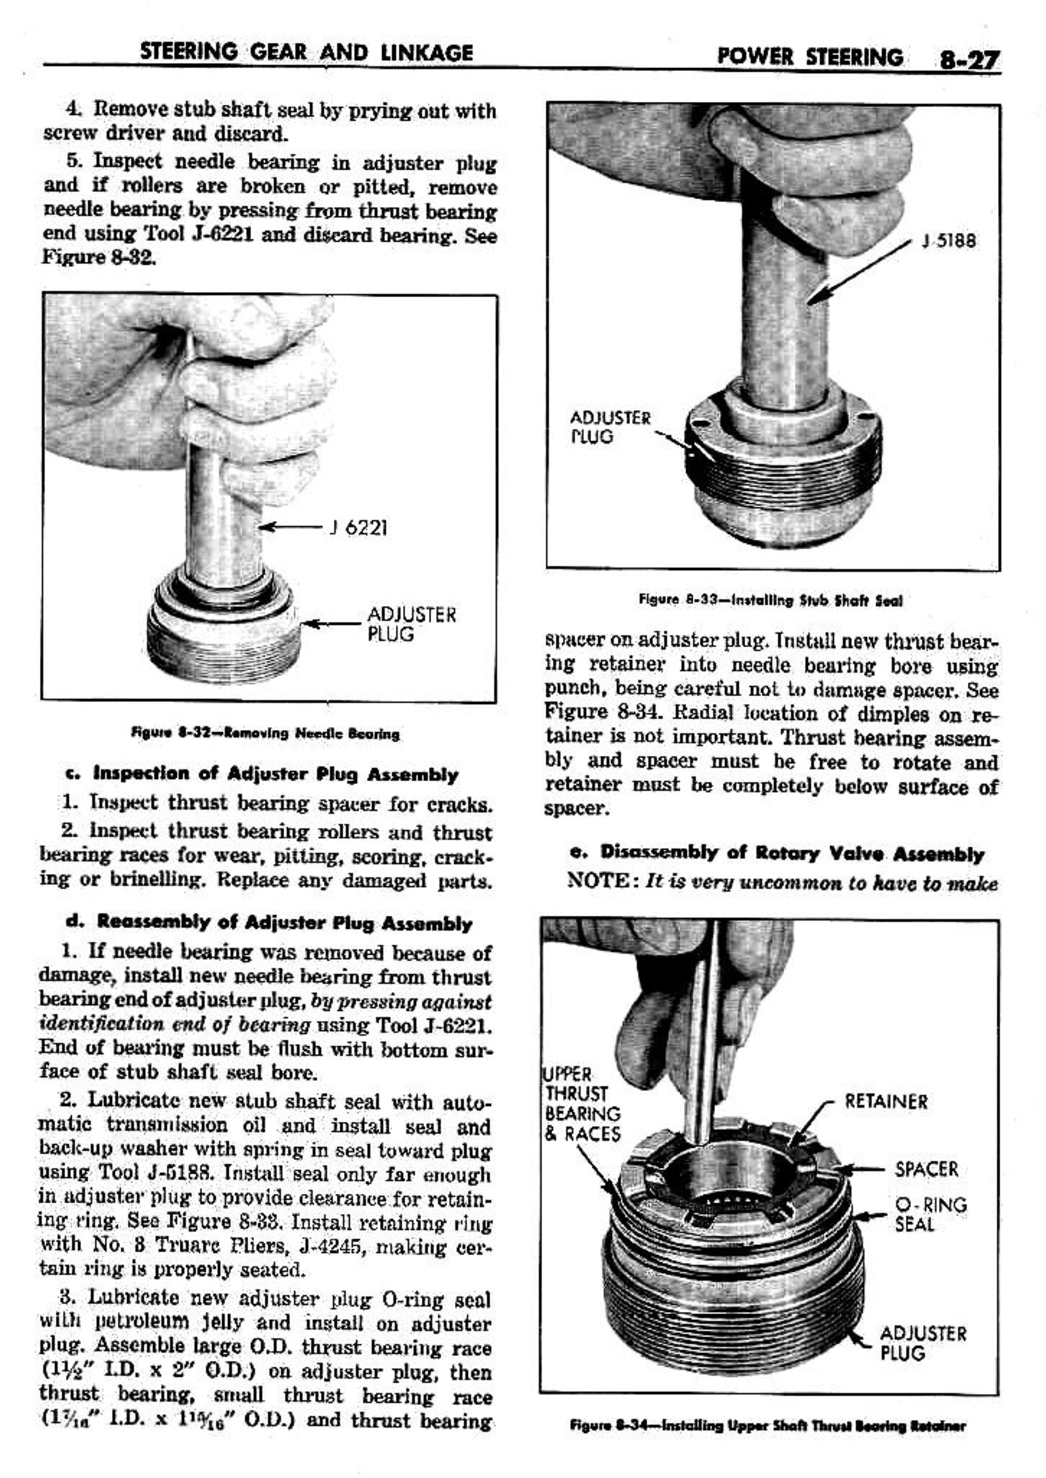 n_09 1959 Buick Shop Manual - Steering-027-027.jpg